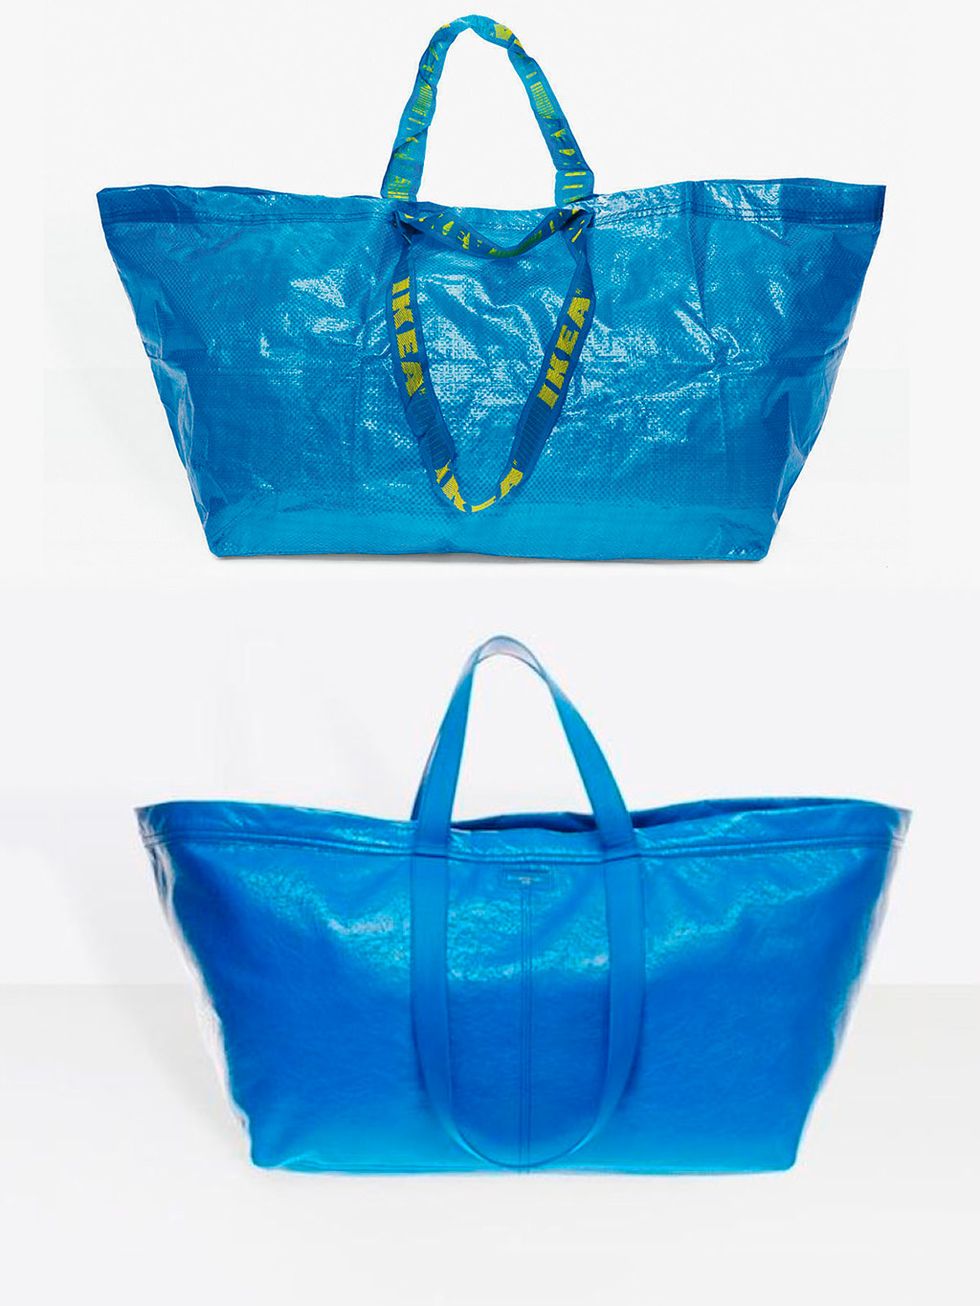 Bolso de Balenciaga Inspirado en las bolsas azules de Ikea